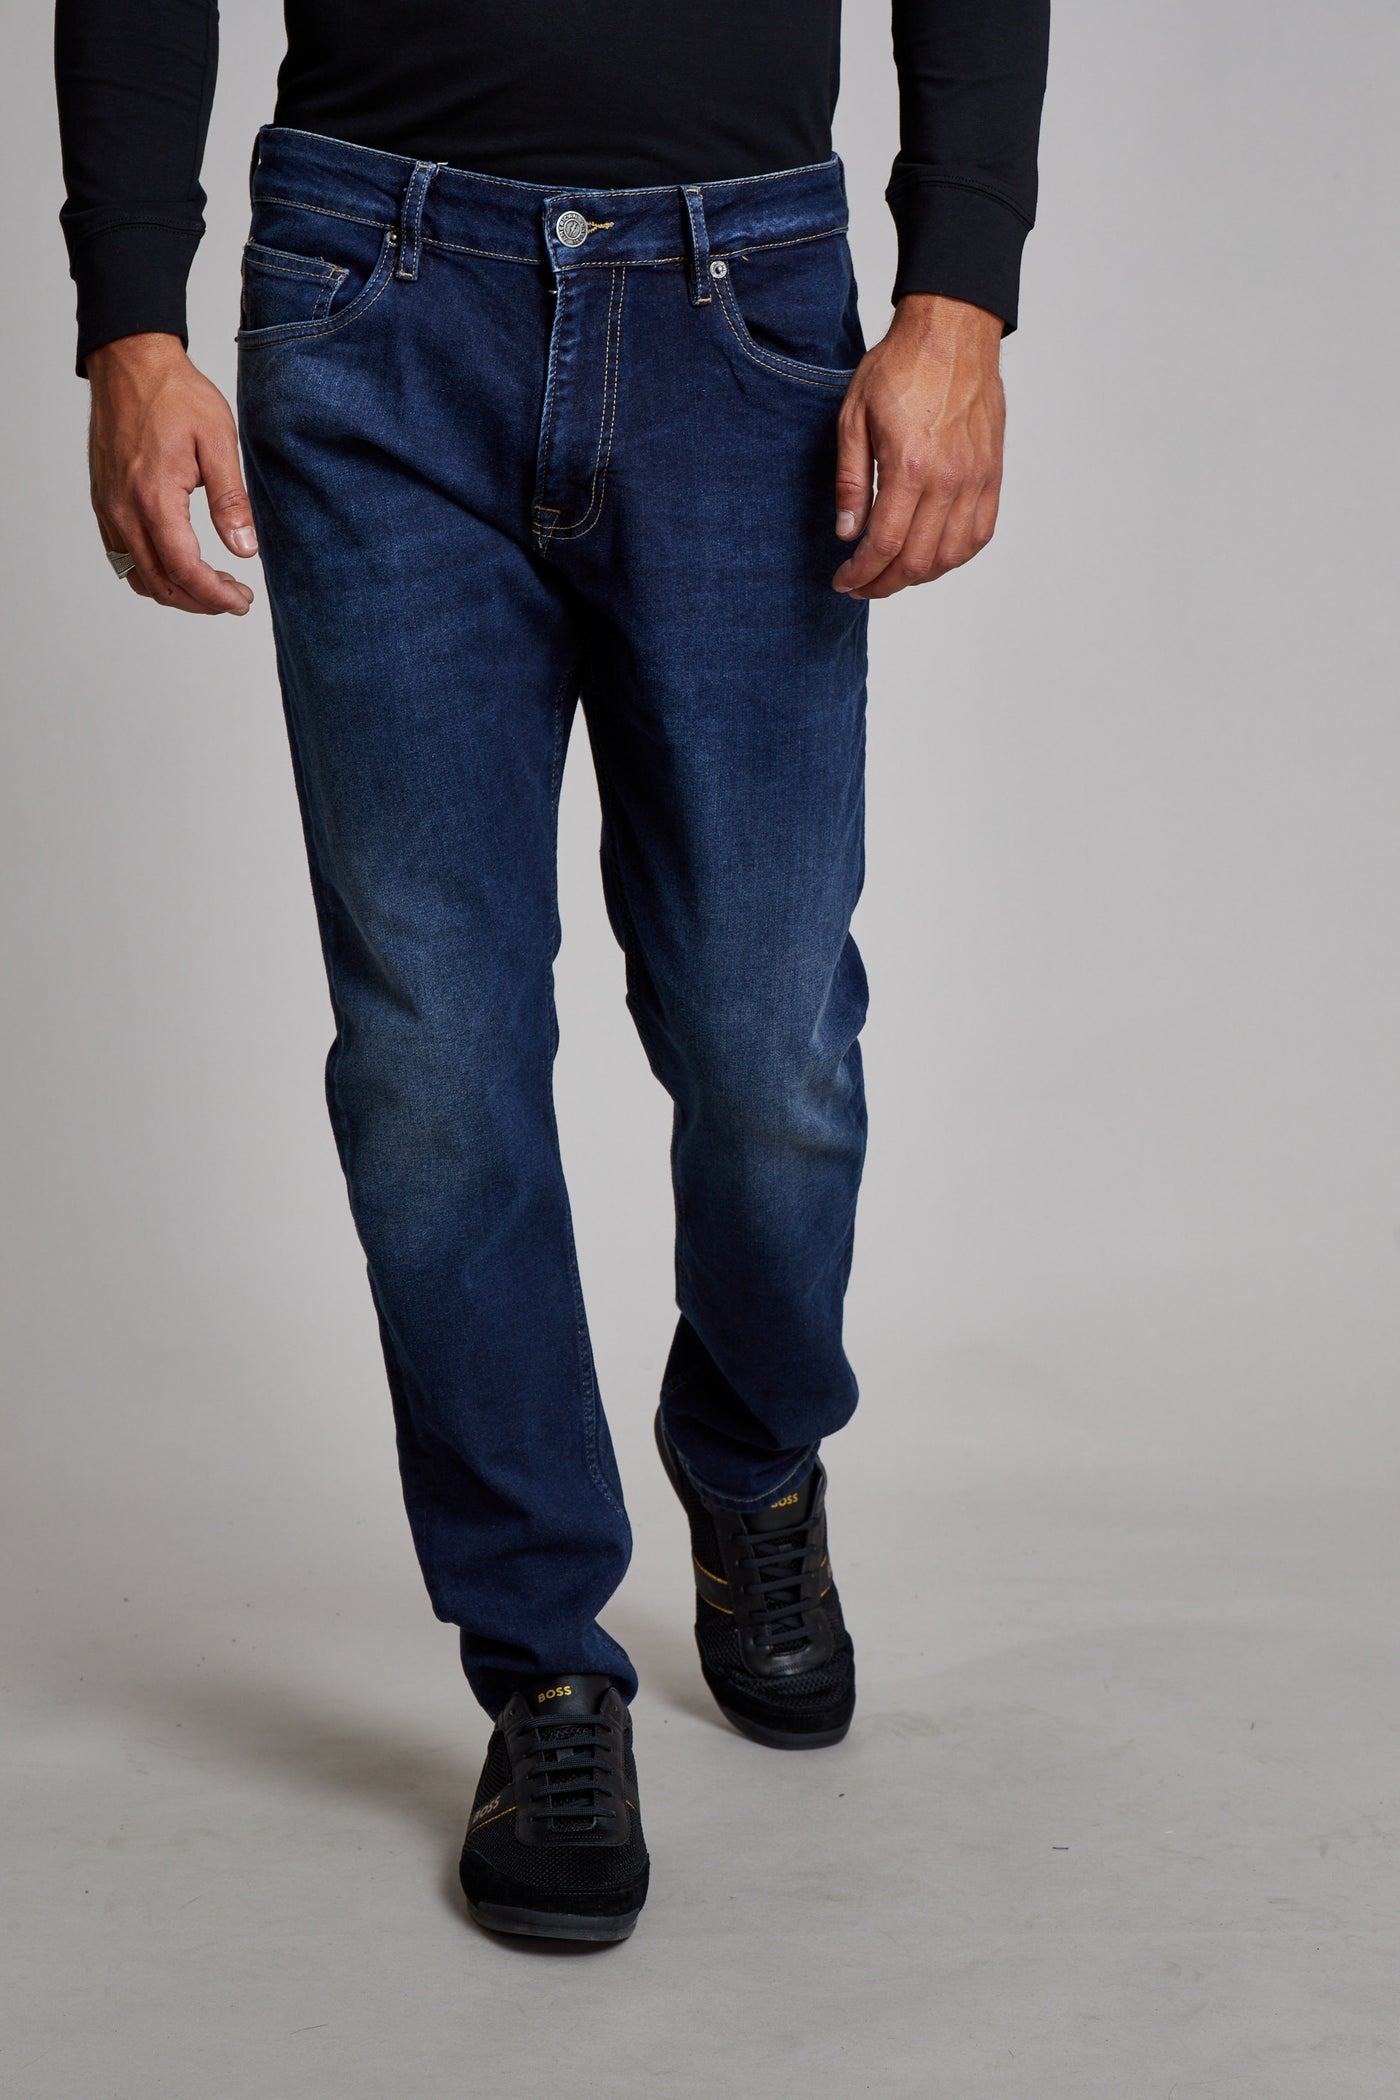 מכנס ג'ינס סלים 130 בצבע כחול מודל 1